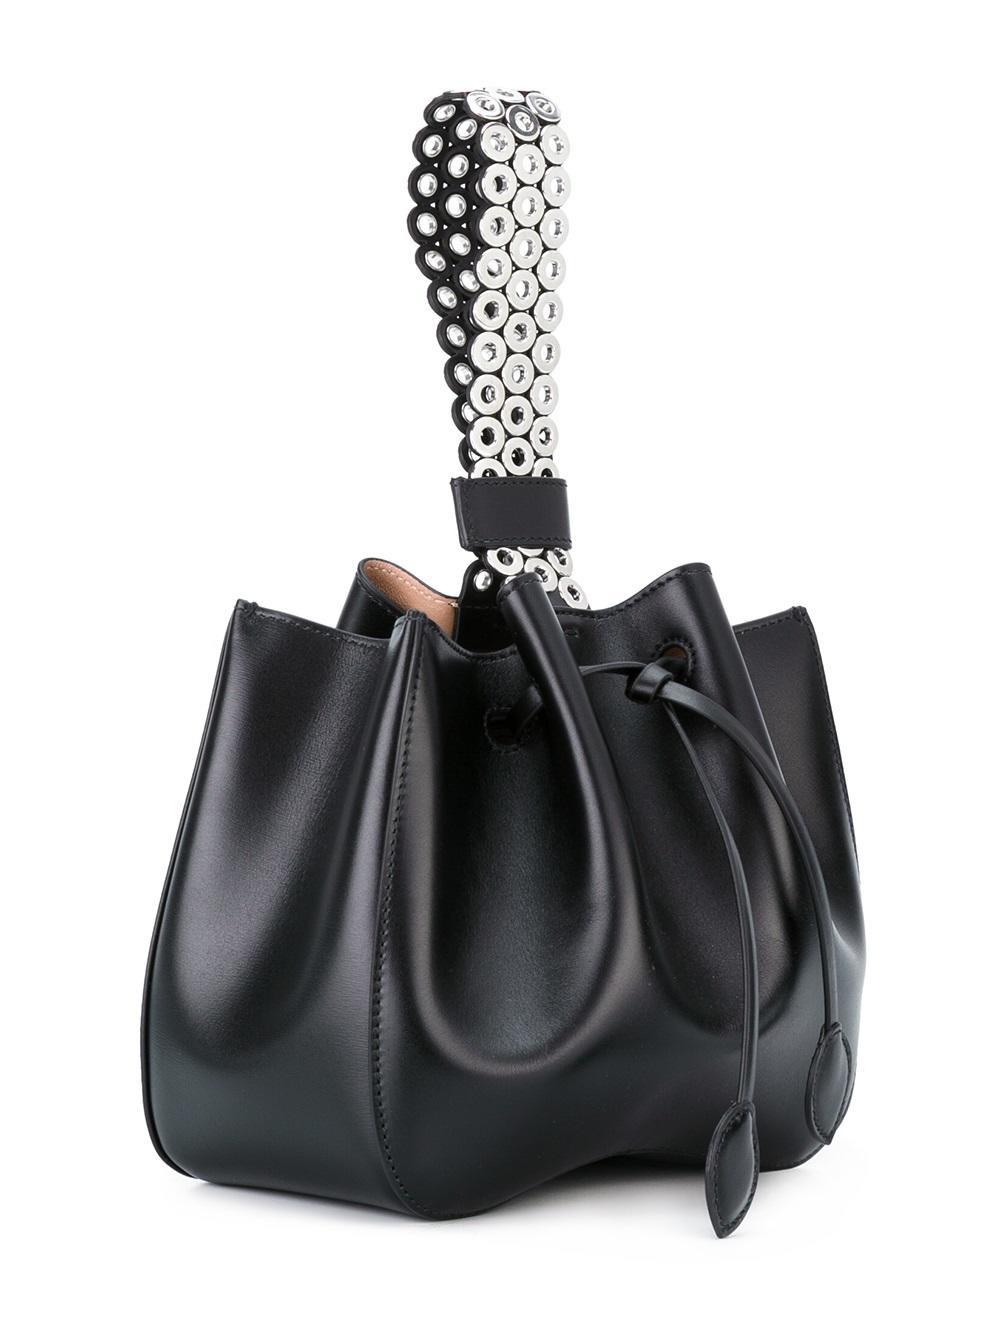 Lyst - Alaïa Eyelet Studded Wristlet Bag in Black